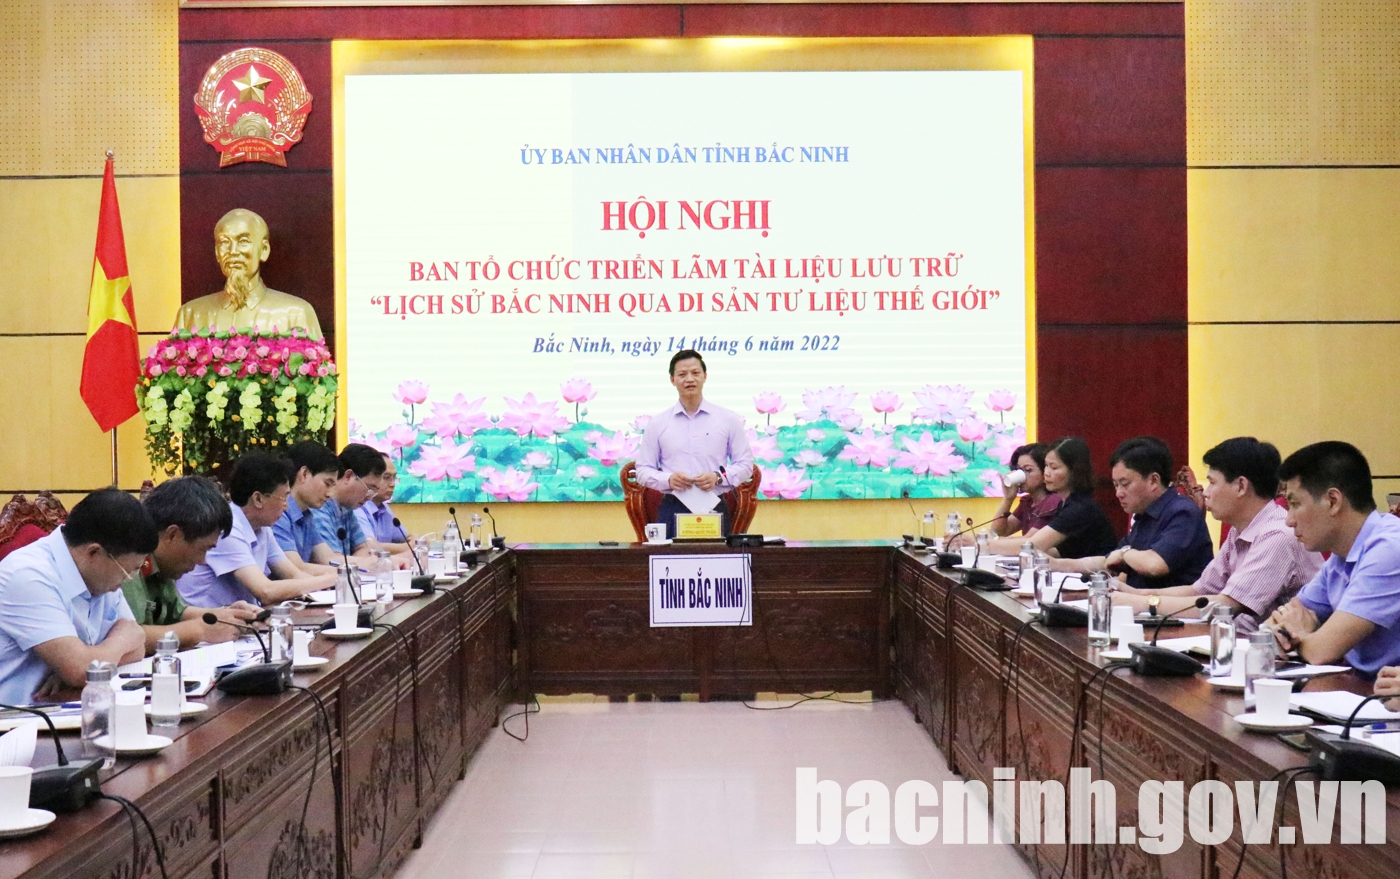 Hội nghị Ban Tổ chức triển lãm tài liệu lưu trữ “Lịch sử Bắc Ninh qua di sản tư liệu thế giới”